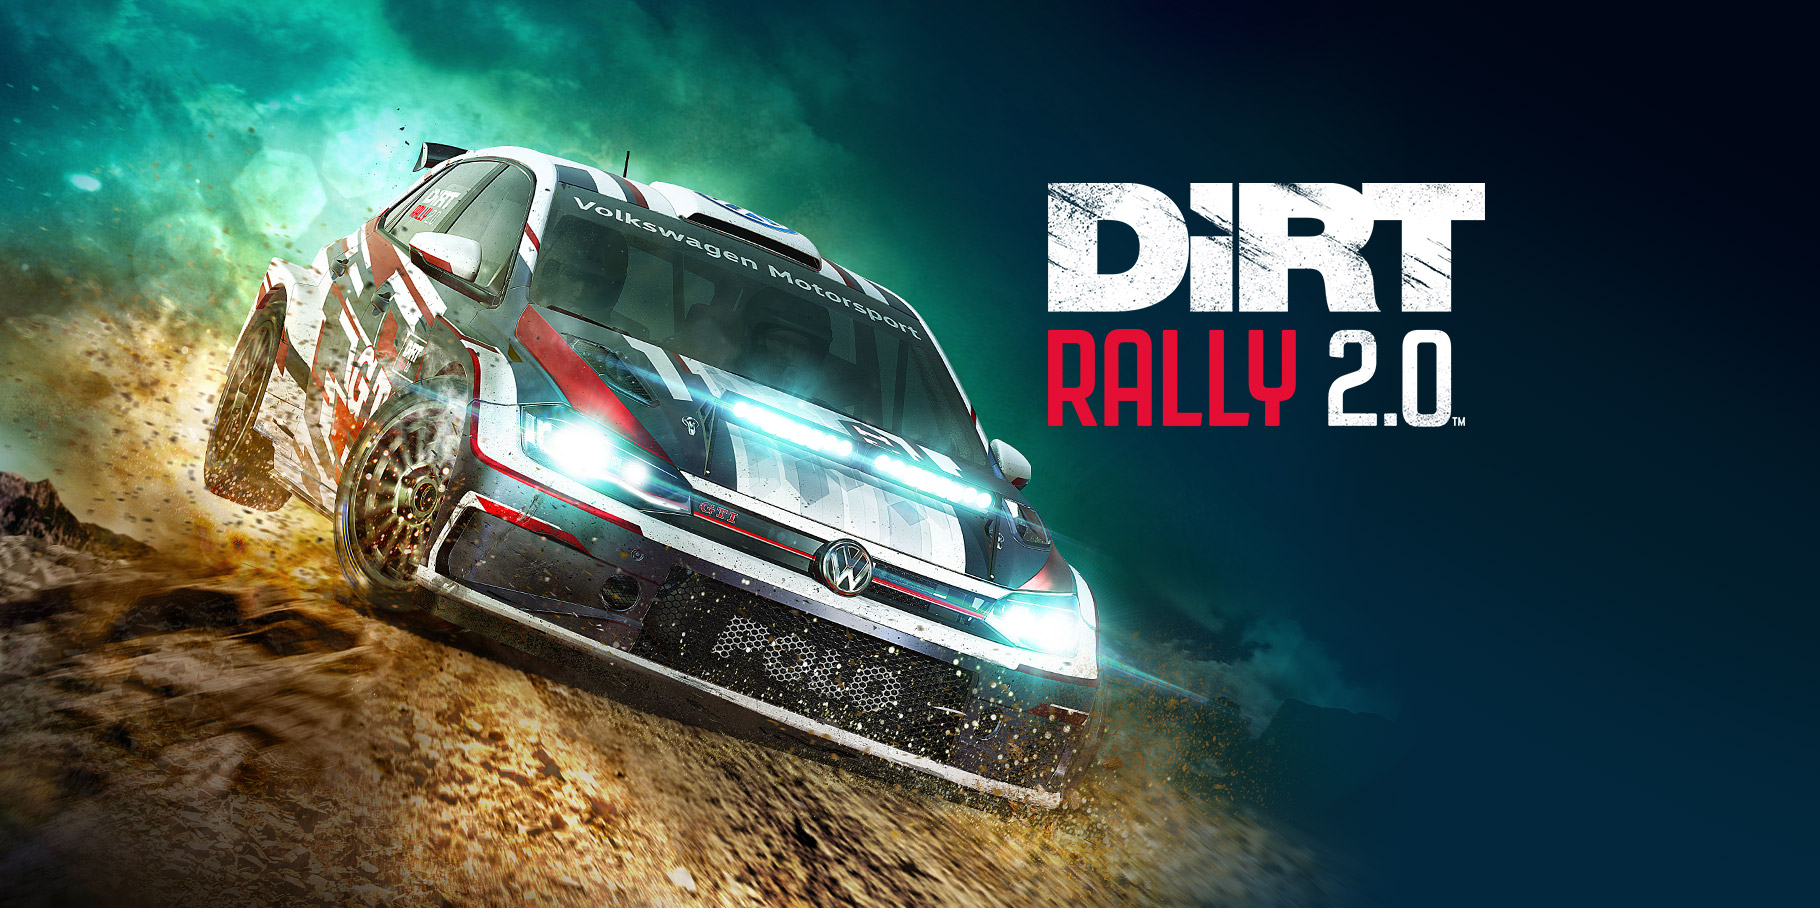 Dirt Rally 2.0 polo season edizione versione